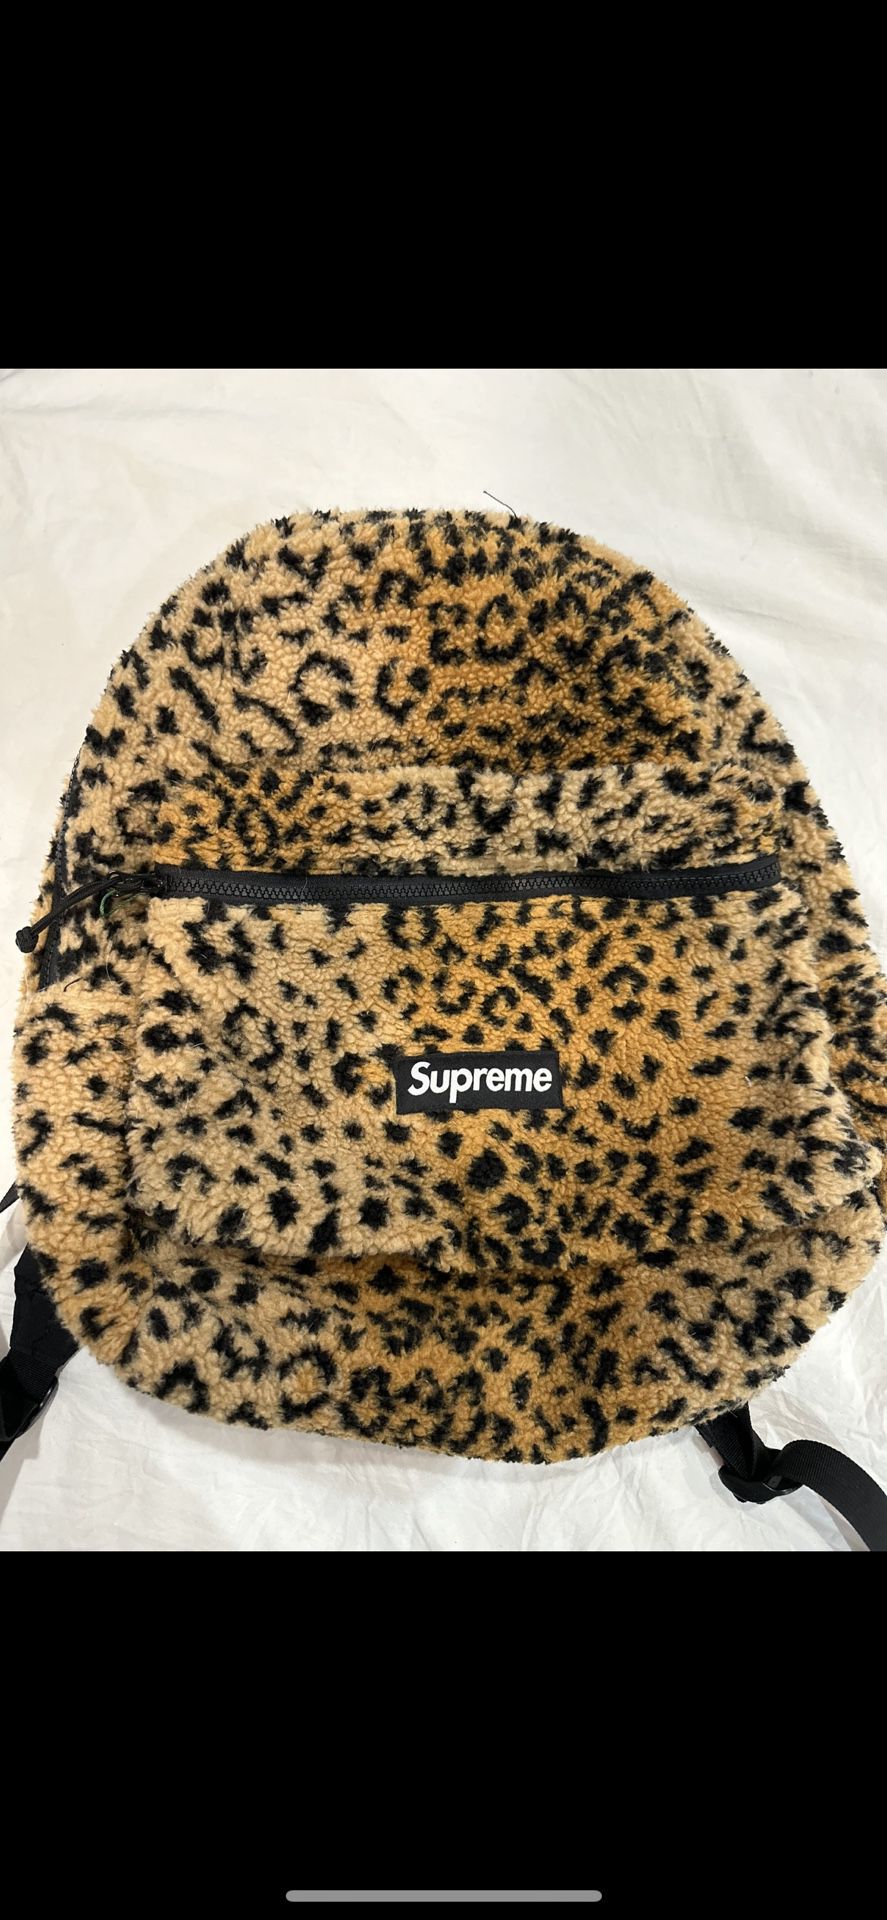 Supreme Cheetah Backpack